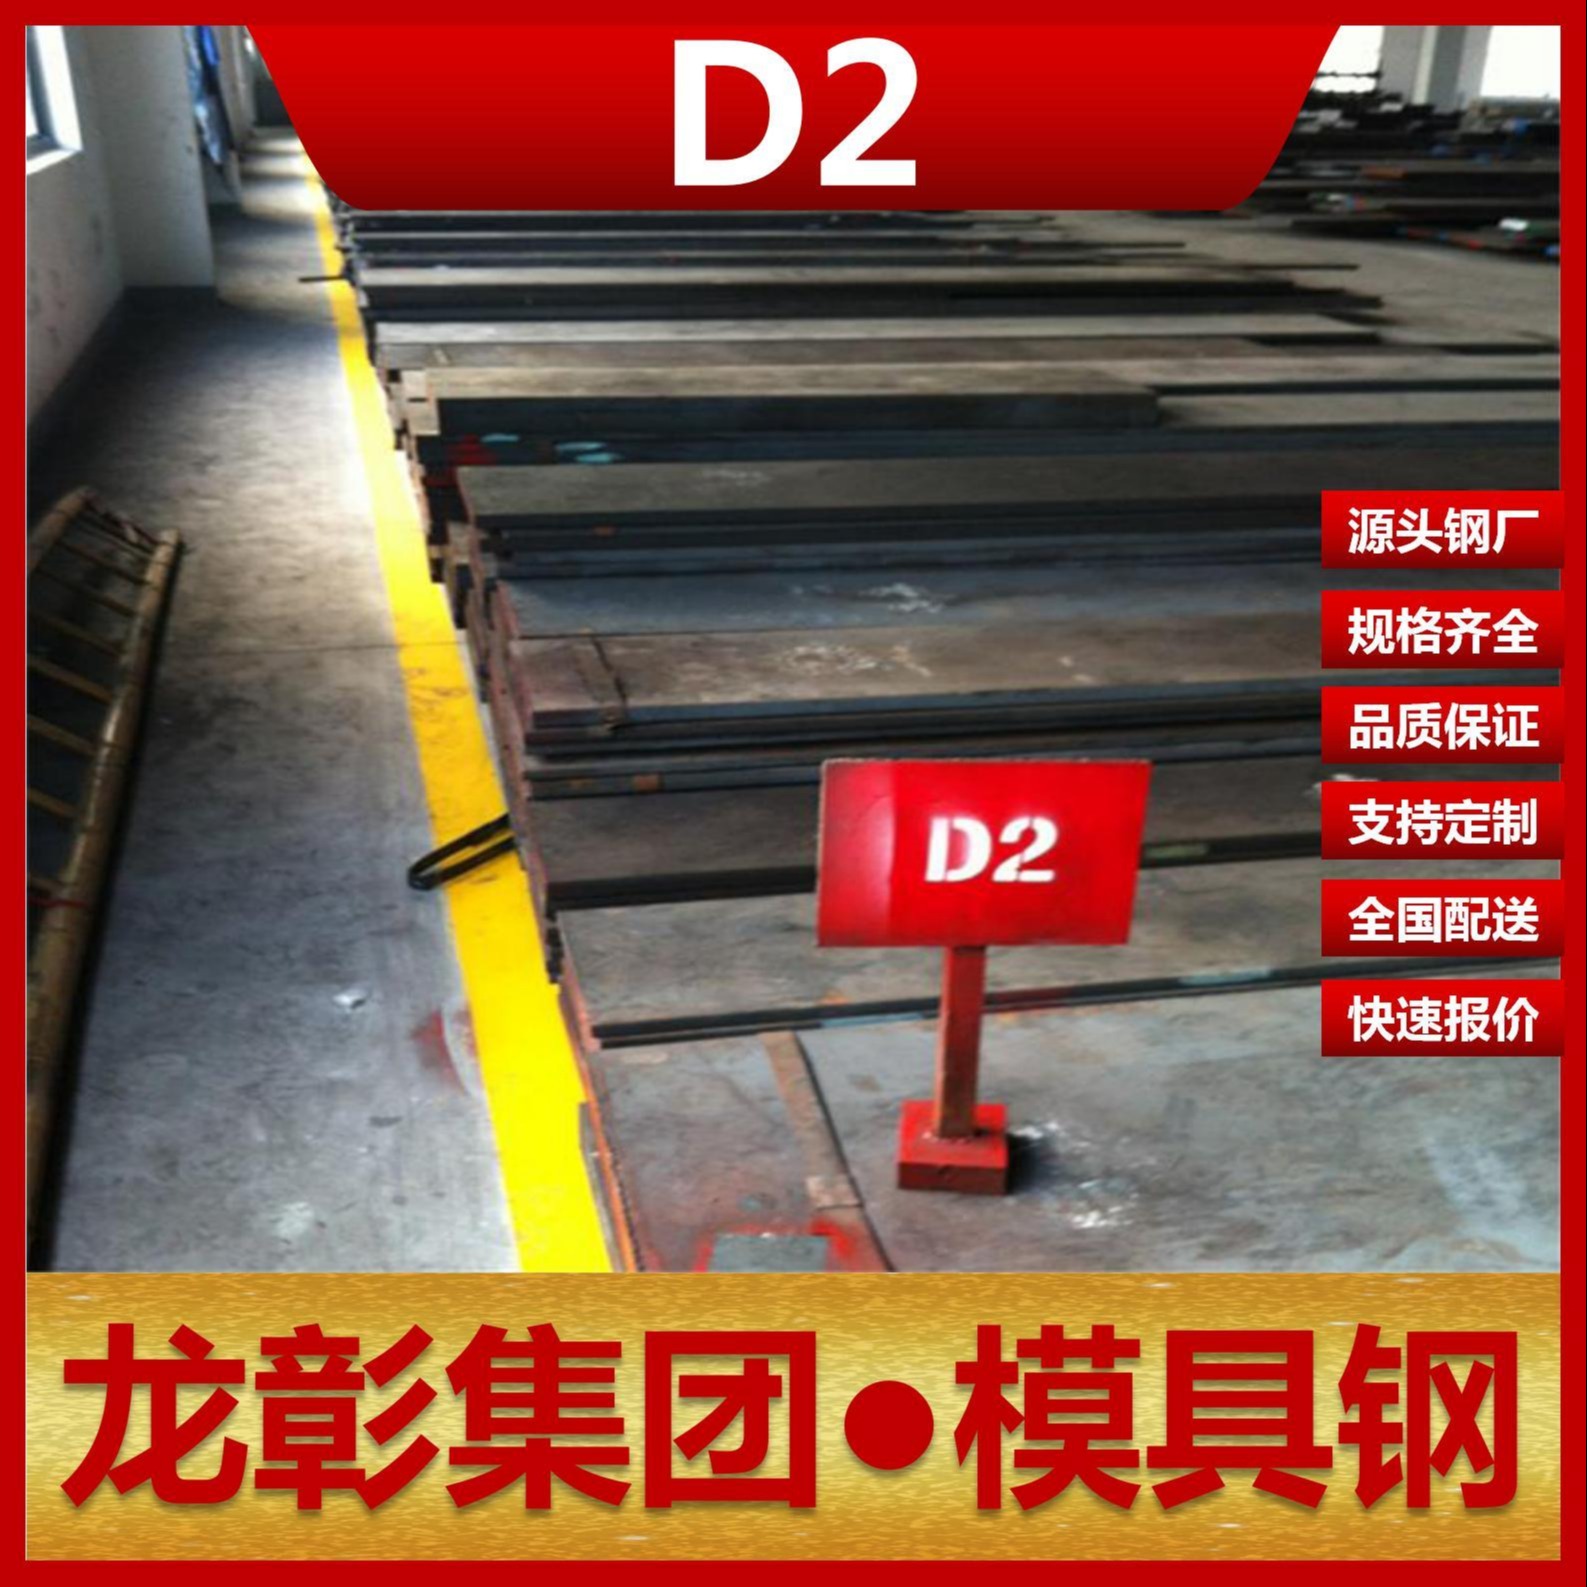 龙彰集团D2模具钢现货批零 主营D2扁钢圆棒冷作模具钢可加工热处理